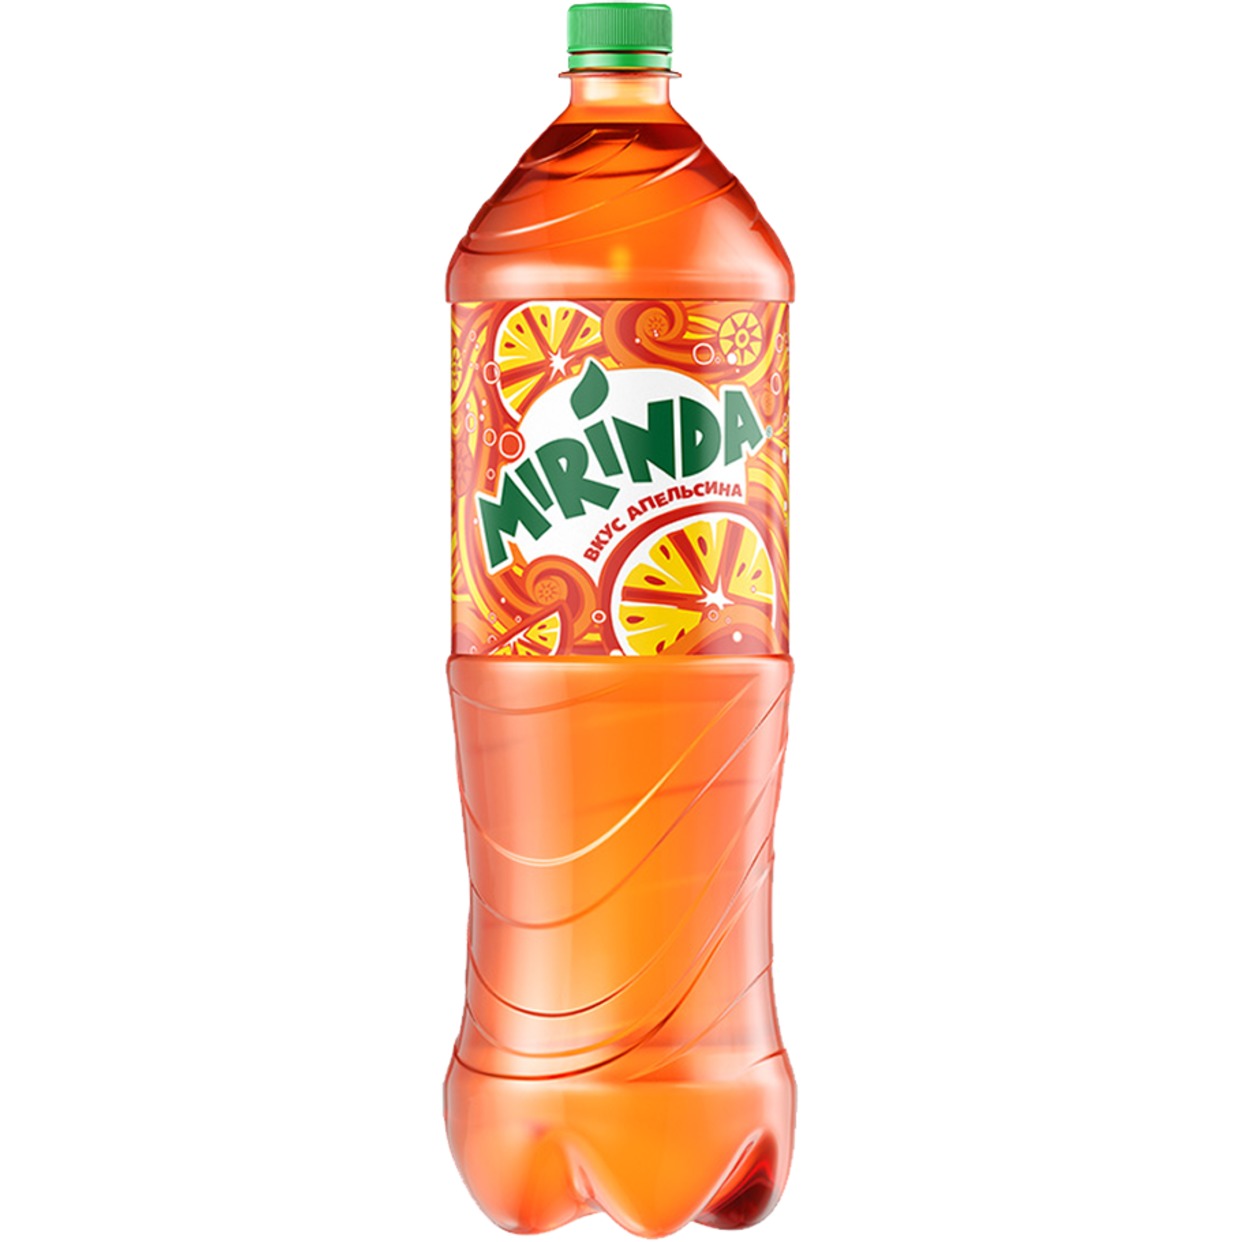 Напитки Mirinda апельсин, 1,5 л по акции в Пятерочке